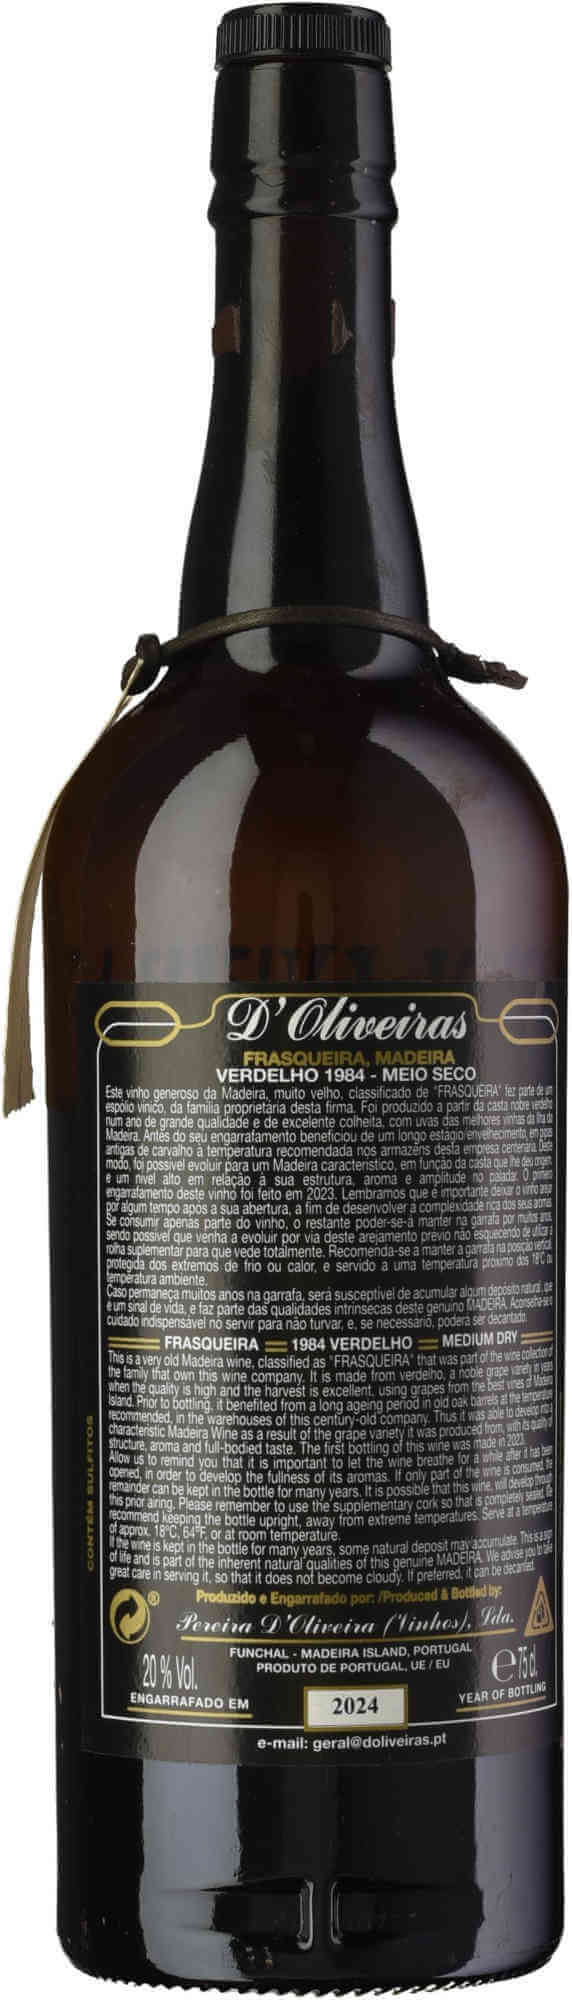 D-Oliveira-Verdelho-Madeira-1984-back